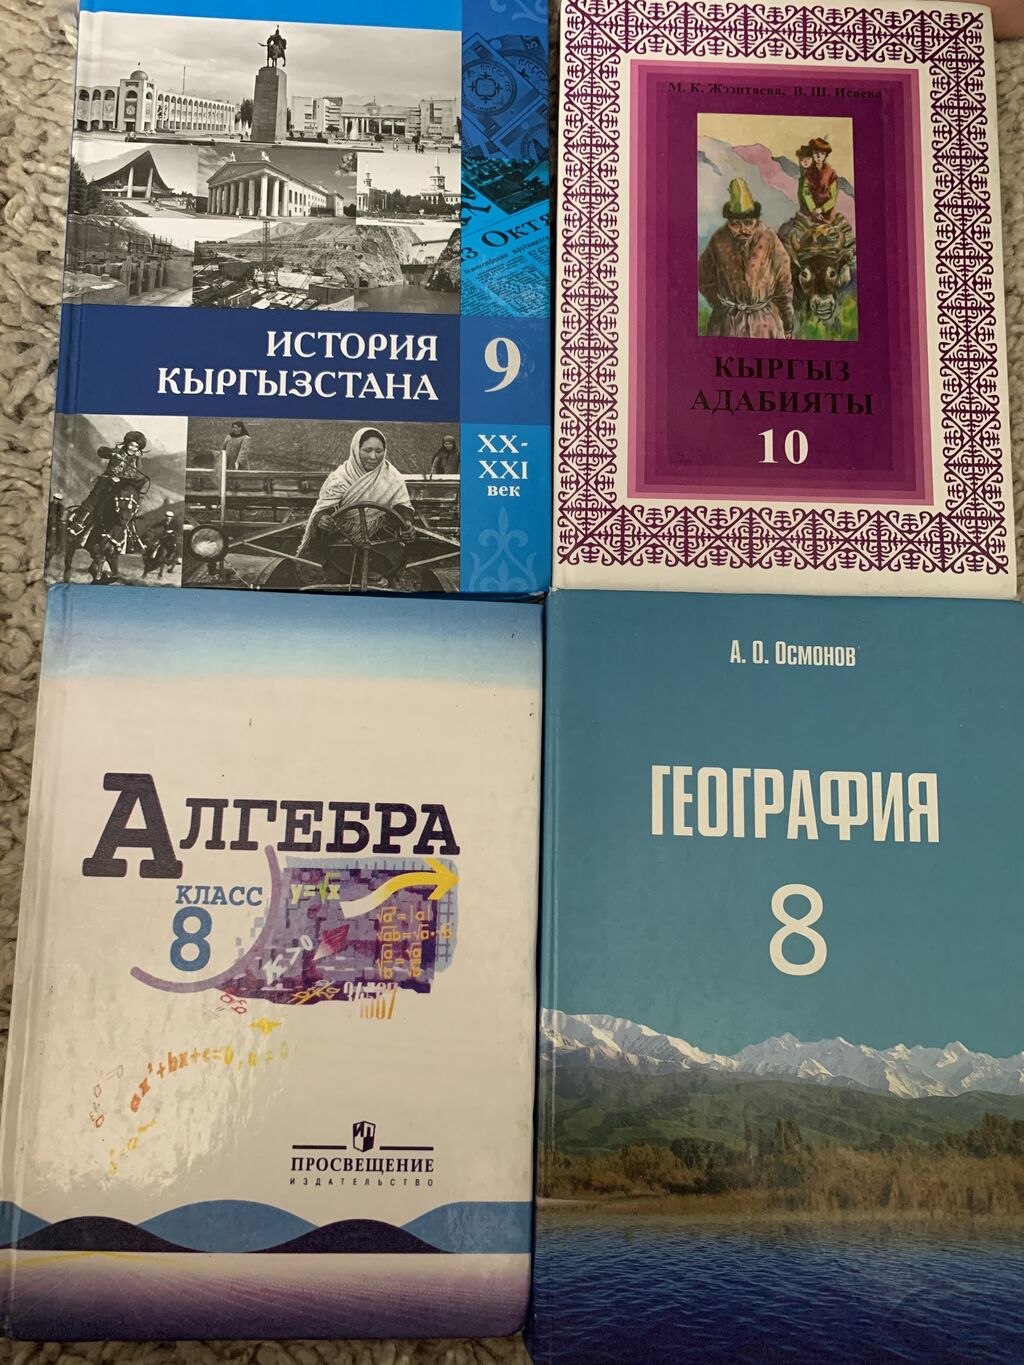 Русский алгебра география. Кыргызская история.